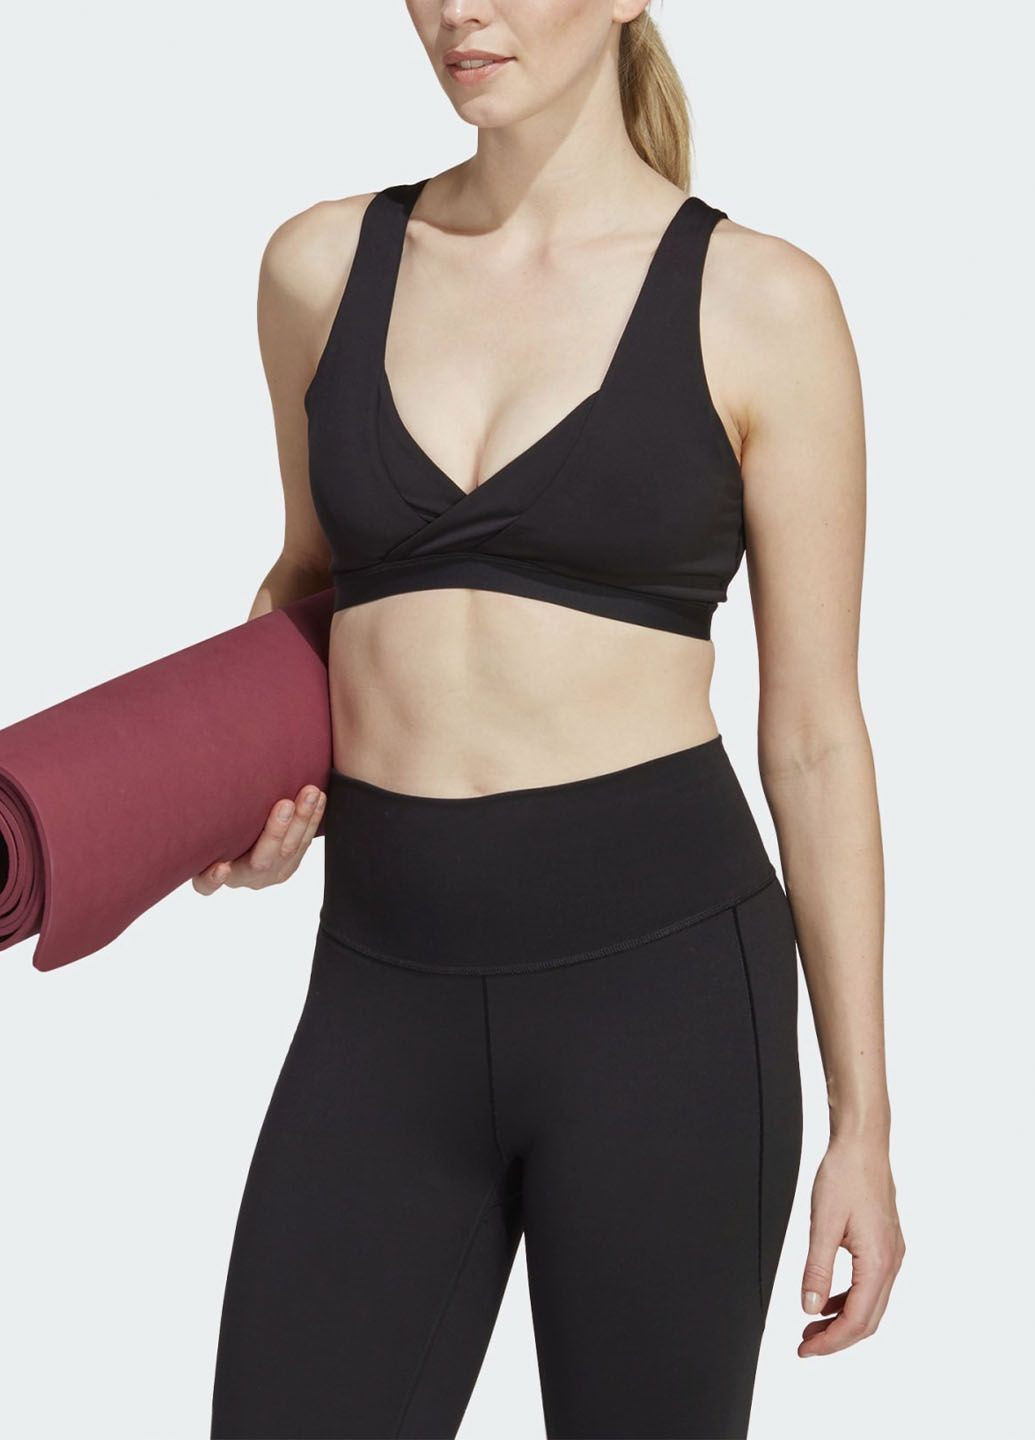 Чёрный бюстгальтер для йоги yoga essentials ic8062 adidas